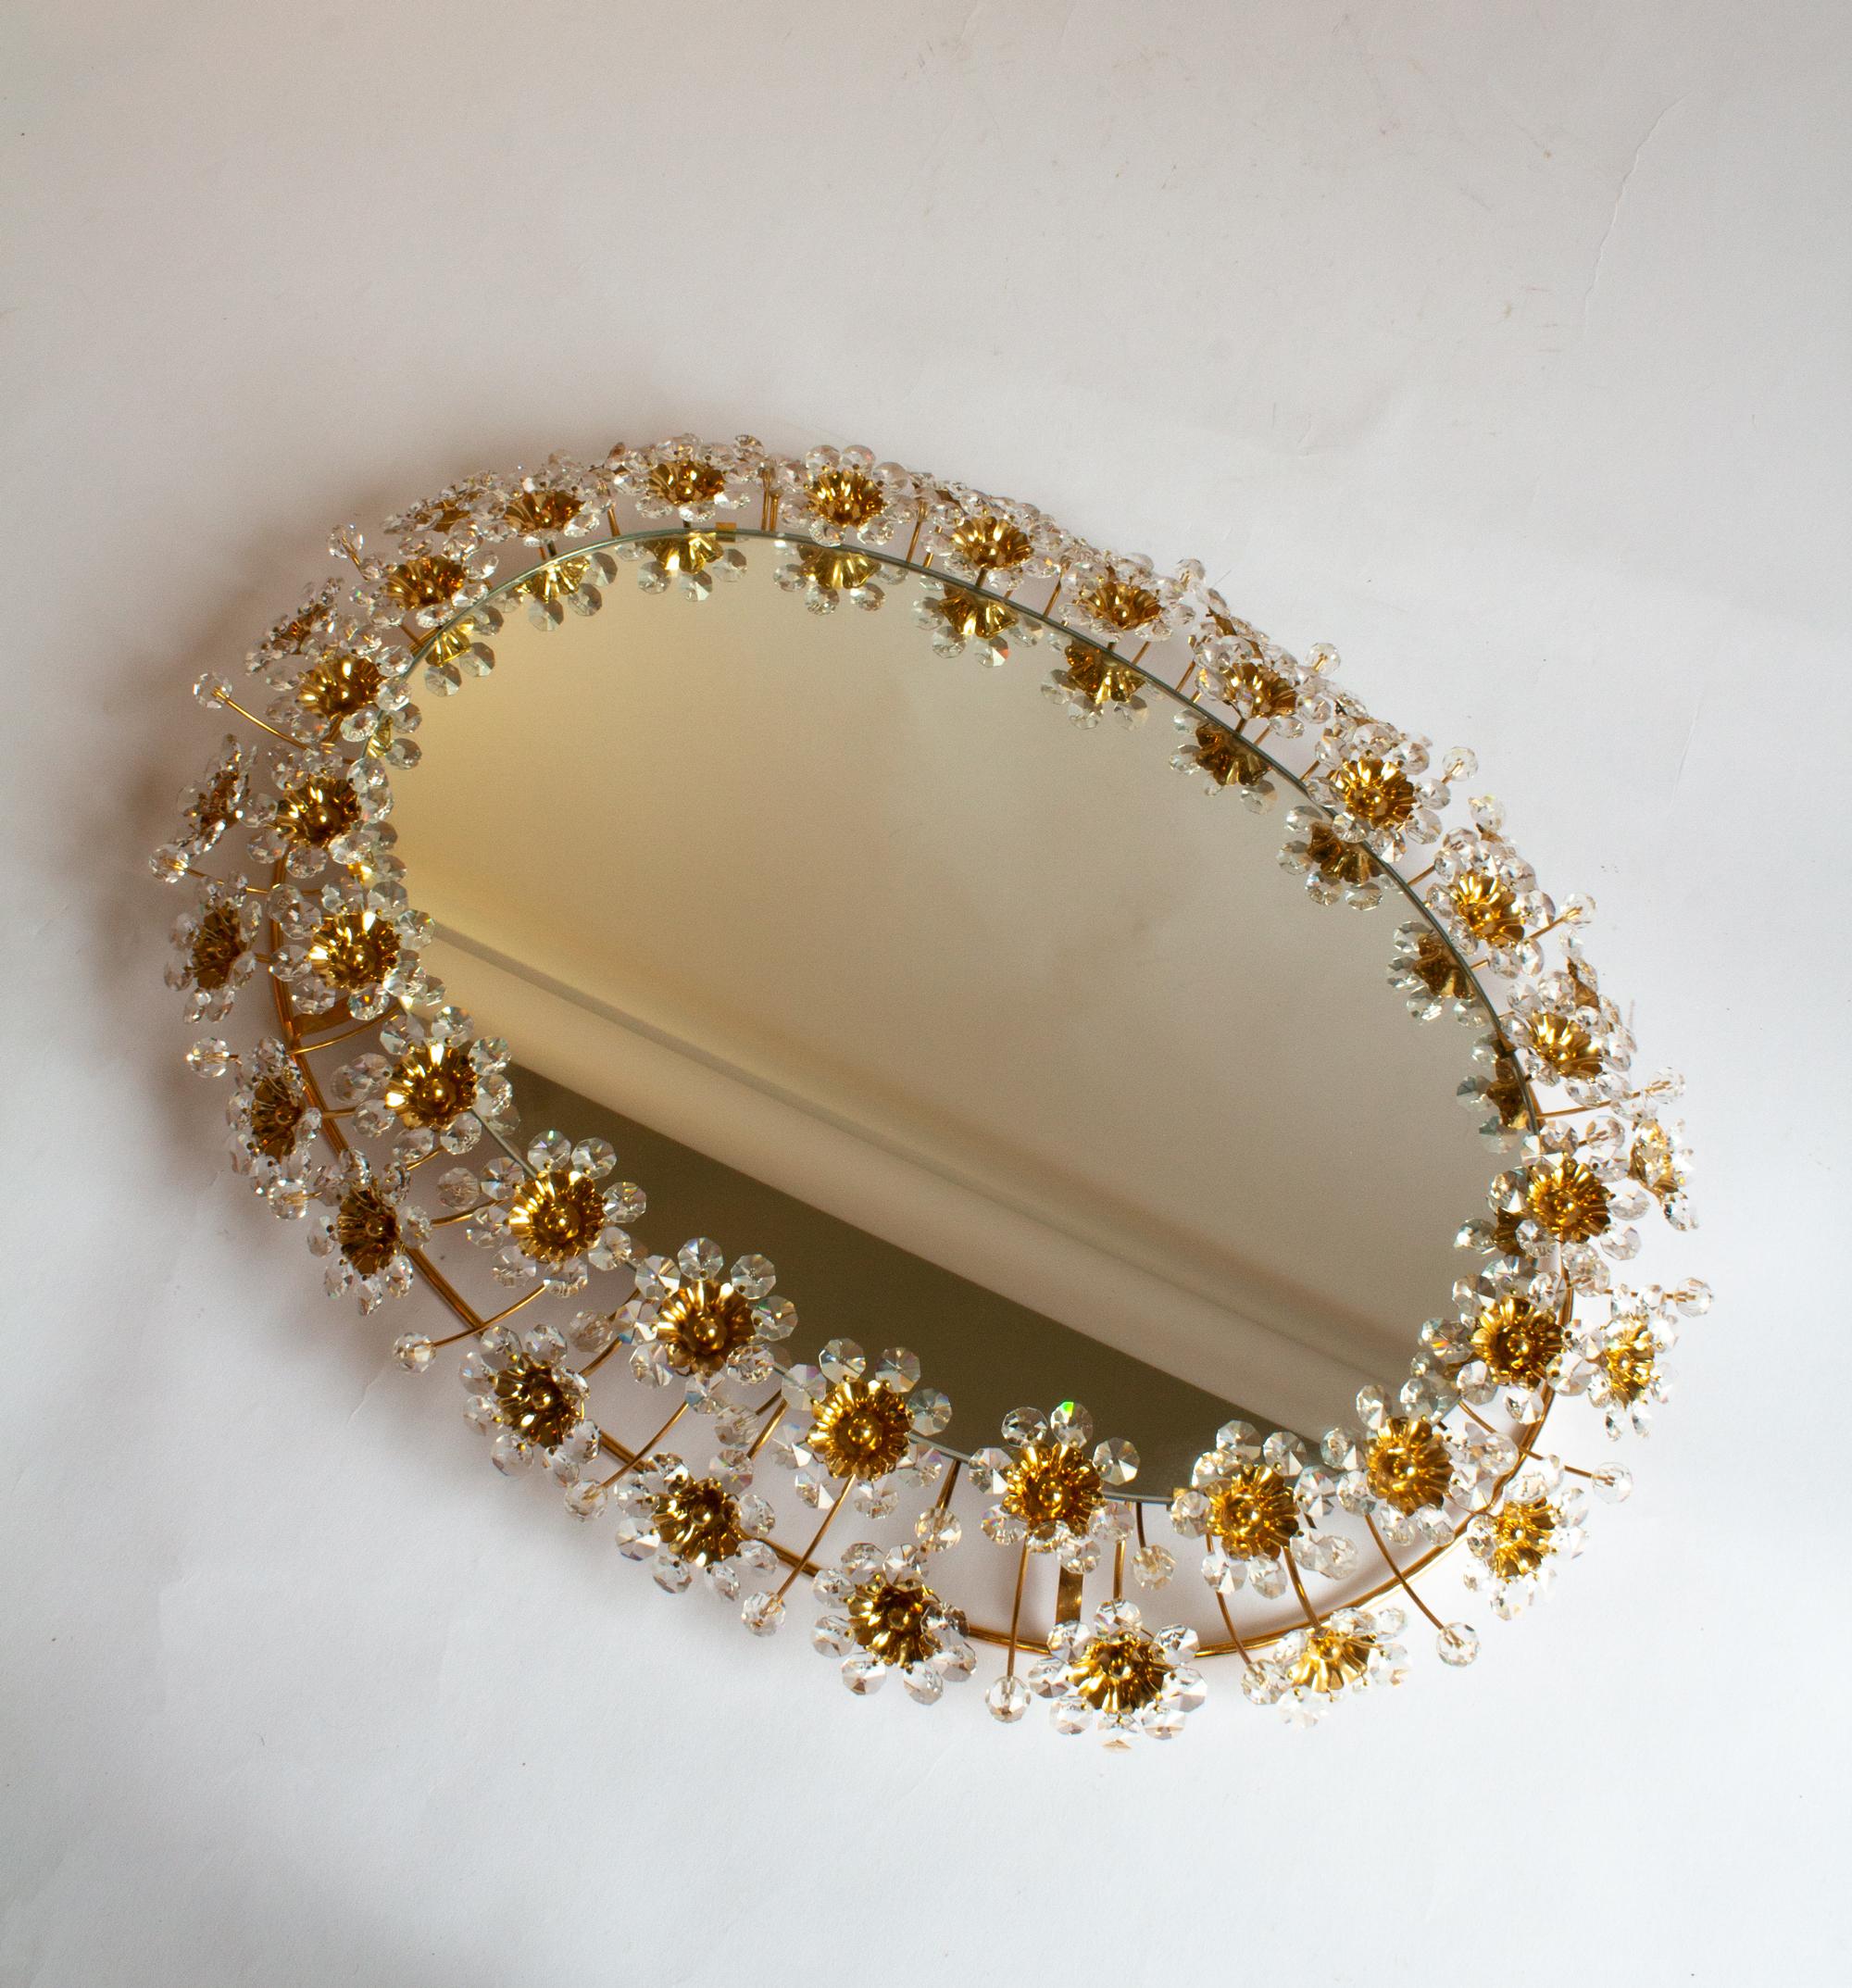 Paire de miroirs ovales Palwa rétro-éclairés avec des fleurs en laiton et cristal doré.
Ces miroirs à fleurs vintage ont été fabriqués par Palwa en Allemagne. Le miroir est maintenu par un cadre ovale en laiton guilloché et une bordure de délicates